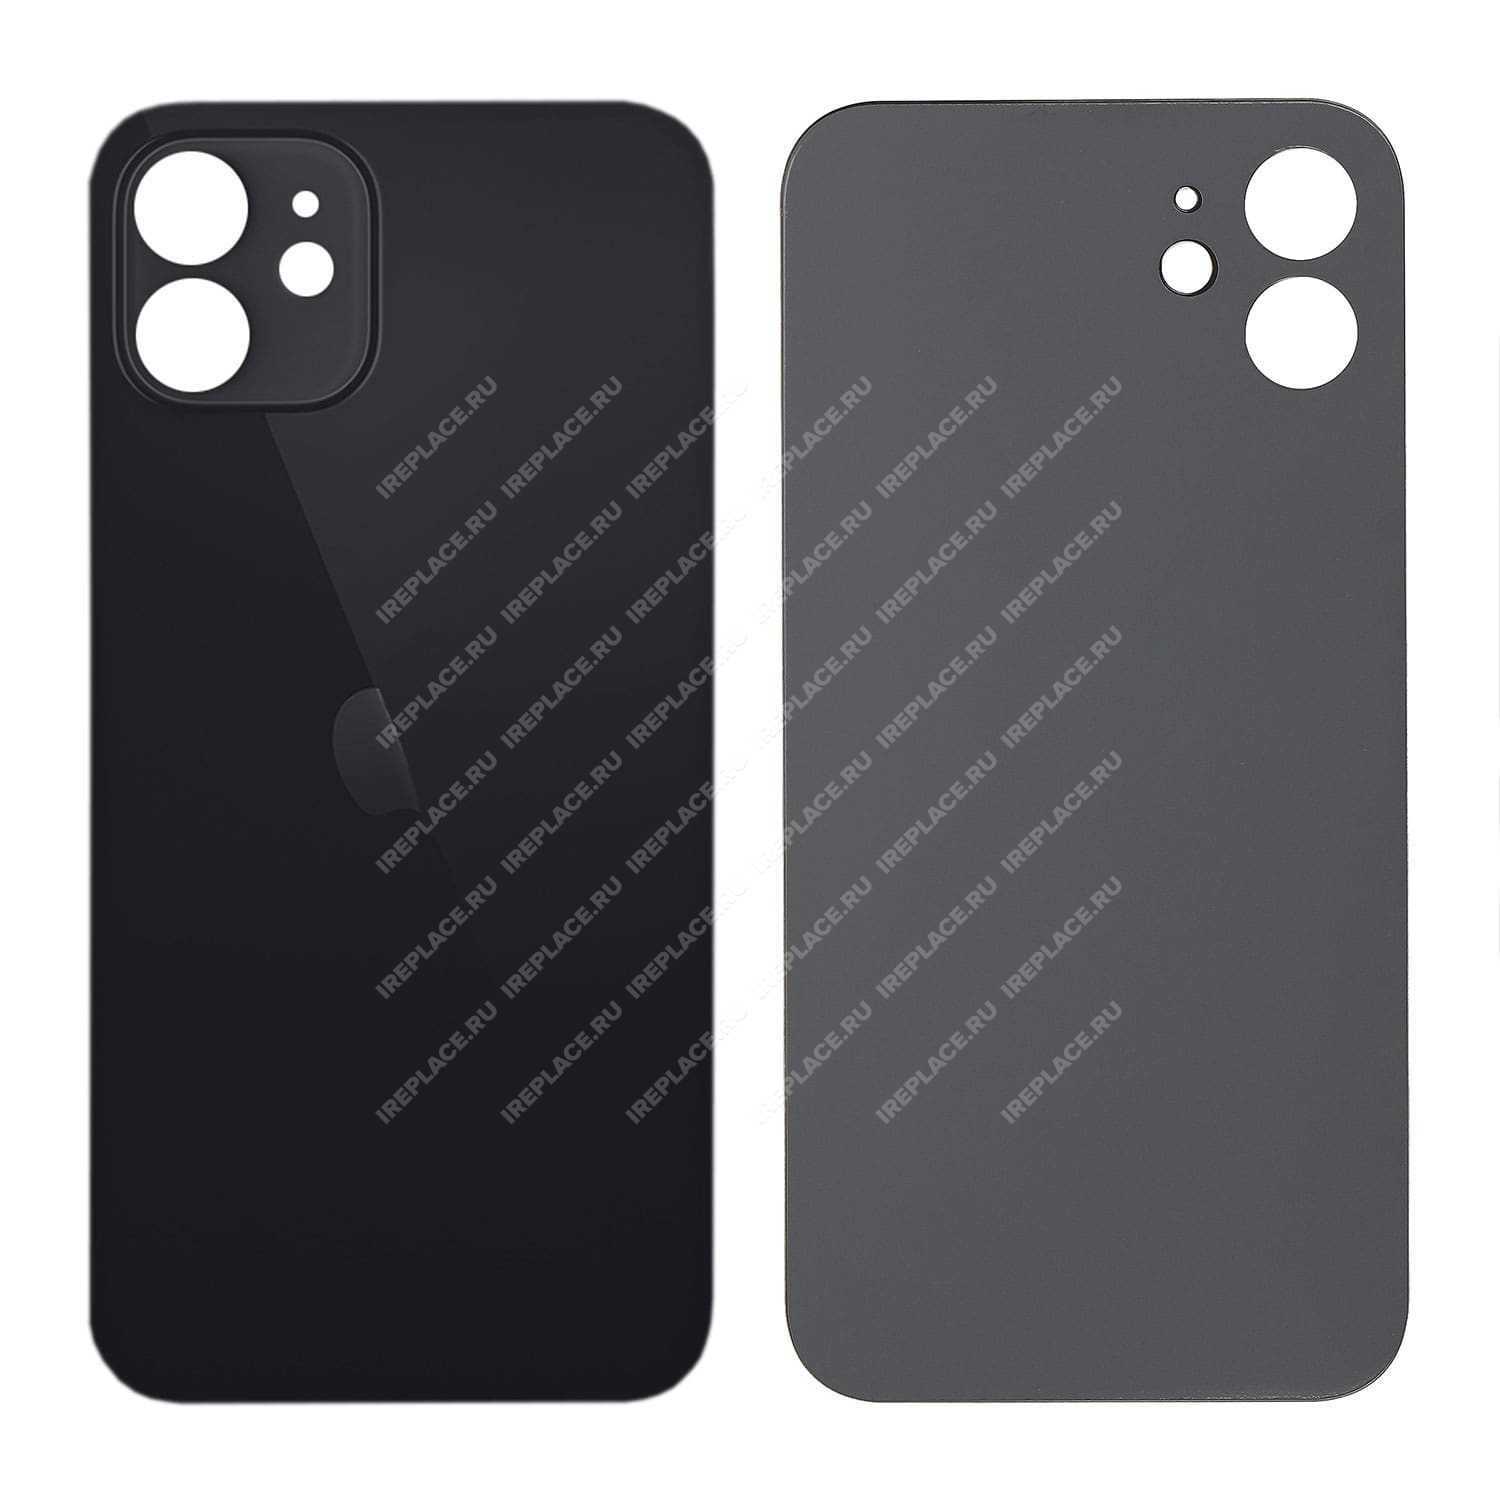 Заднее стекло для iPhone 12 Mini, Black | цена 1 990.00Р. Купить с  доставкой по России можно на сайте iReplace или по 8-800-555-83-35